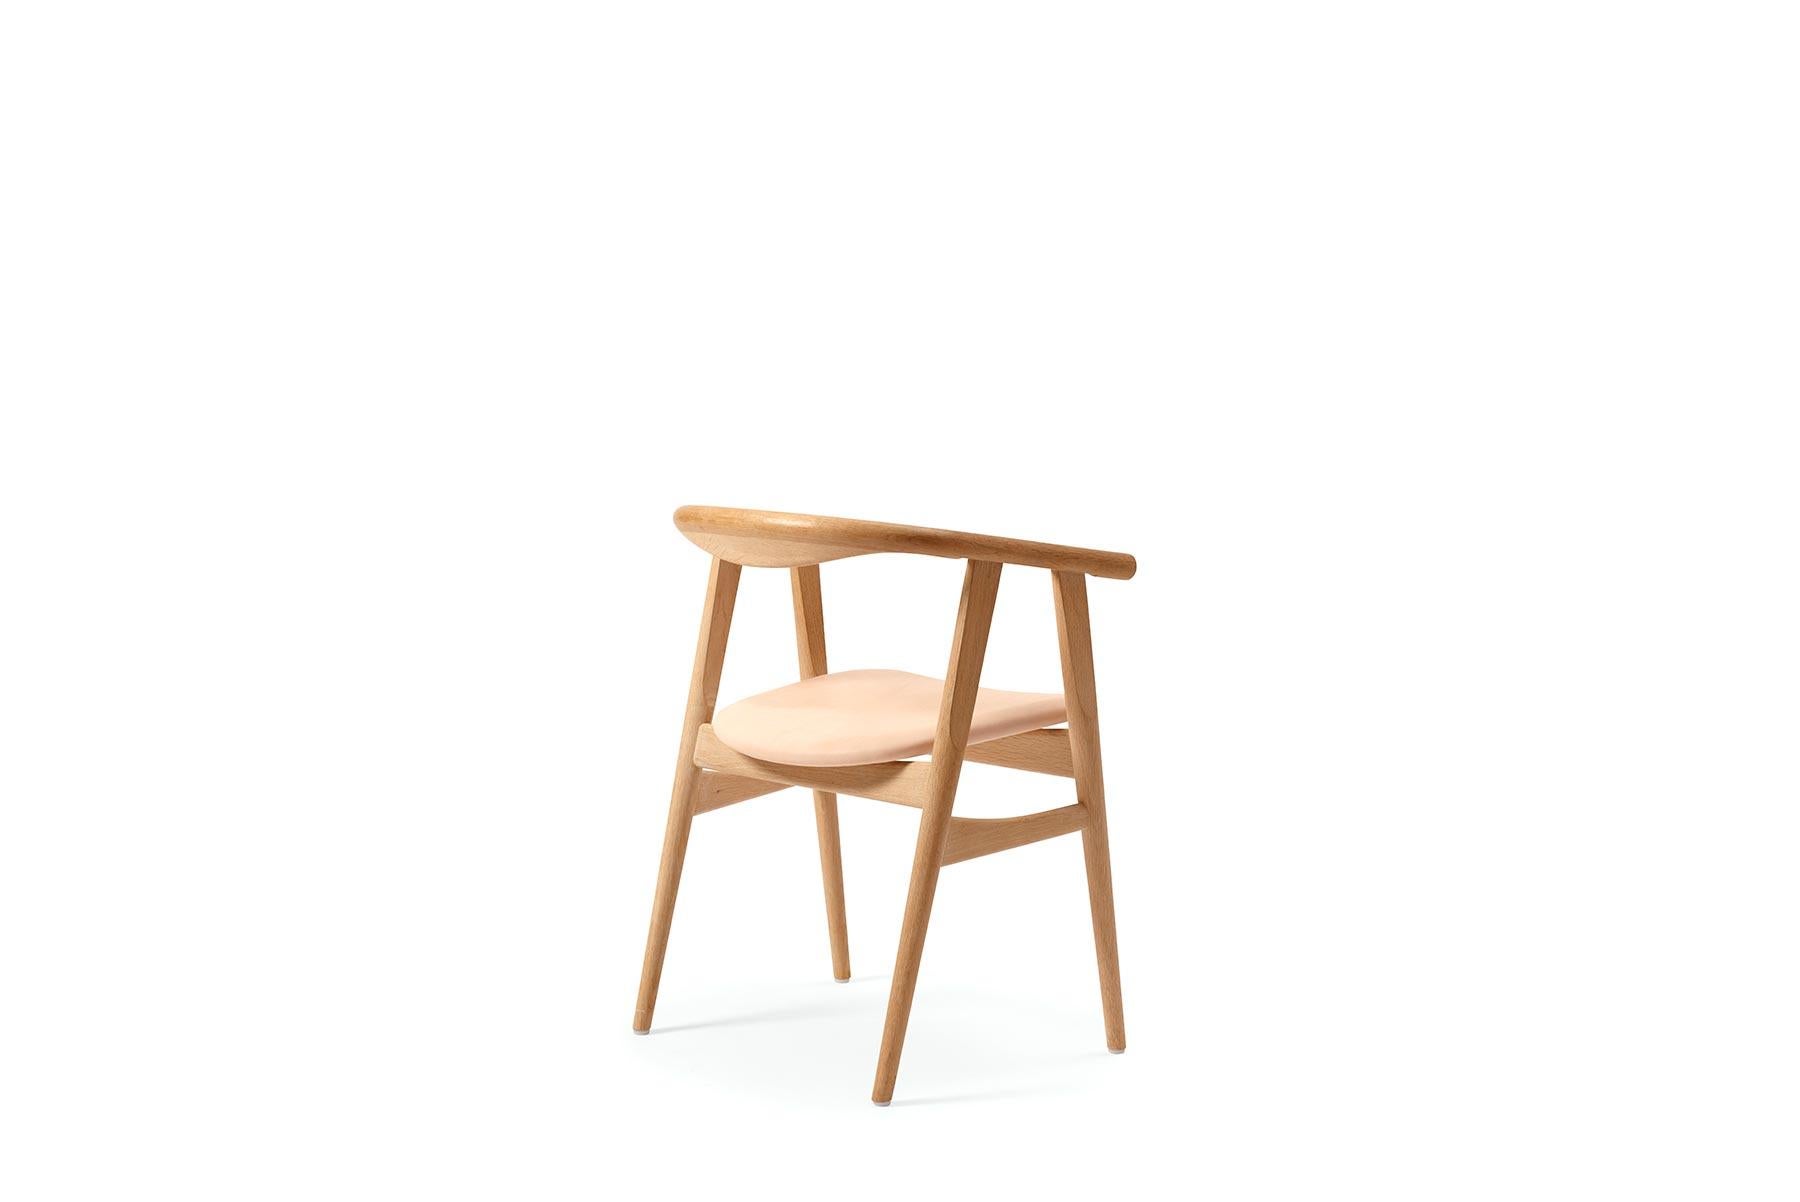 Diseñada por Hans Wegner en 1970, la silla de comedor GE 525 ofrece un bonito diseño redondeado esculpido en madera. La silla está construida a mano en la fábrica de GETAMA en Gedsted, Dinamarca, por ebanistas expertos que utilizan técnicas